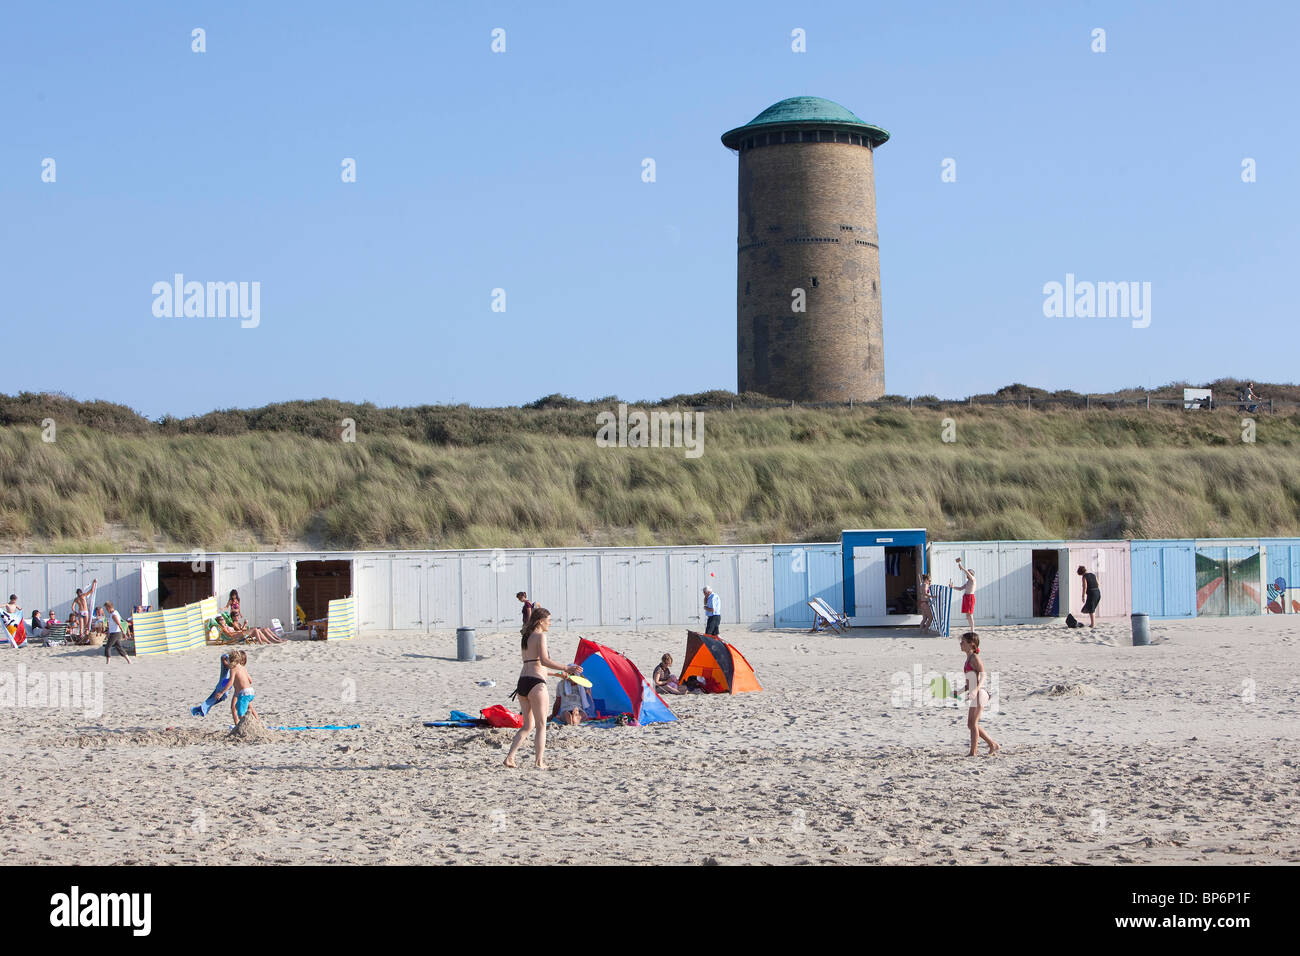 Domburg, plage avec des maisons de plage et une tour de l'eau dans l'arrière-plan Banque D'Images